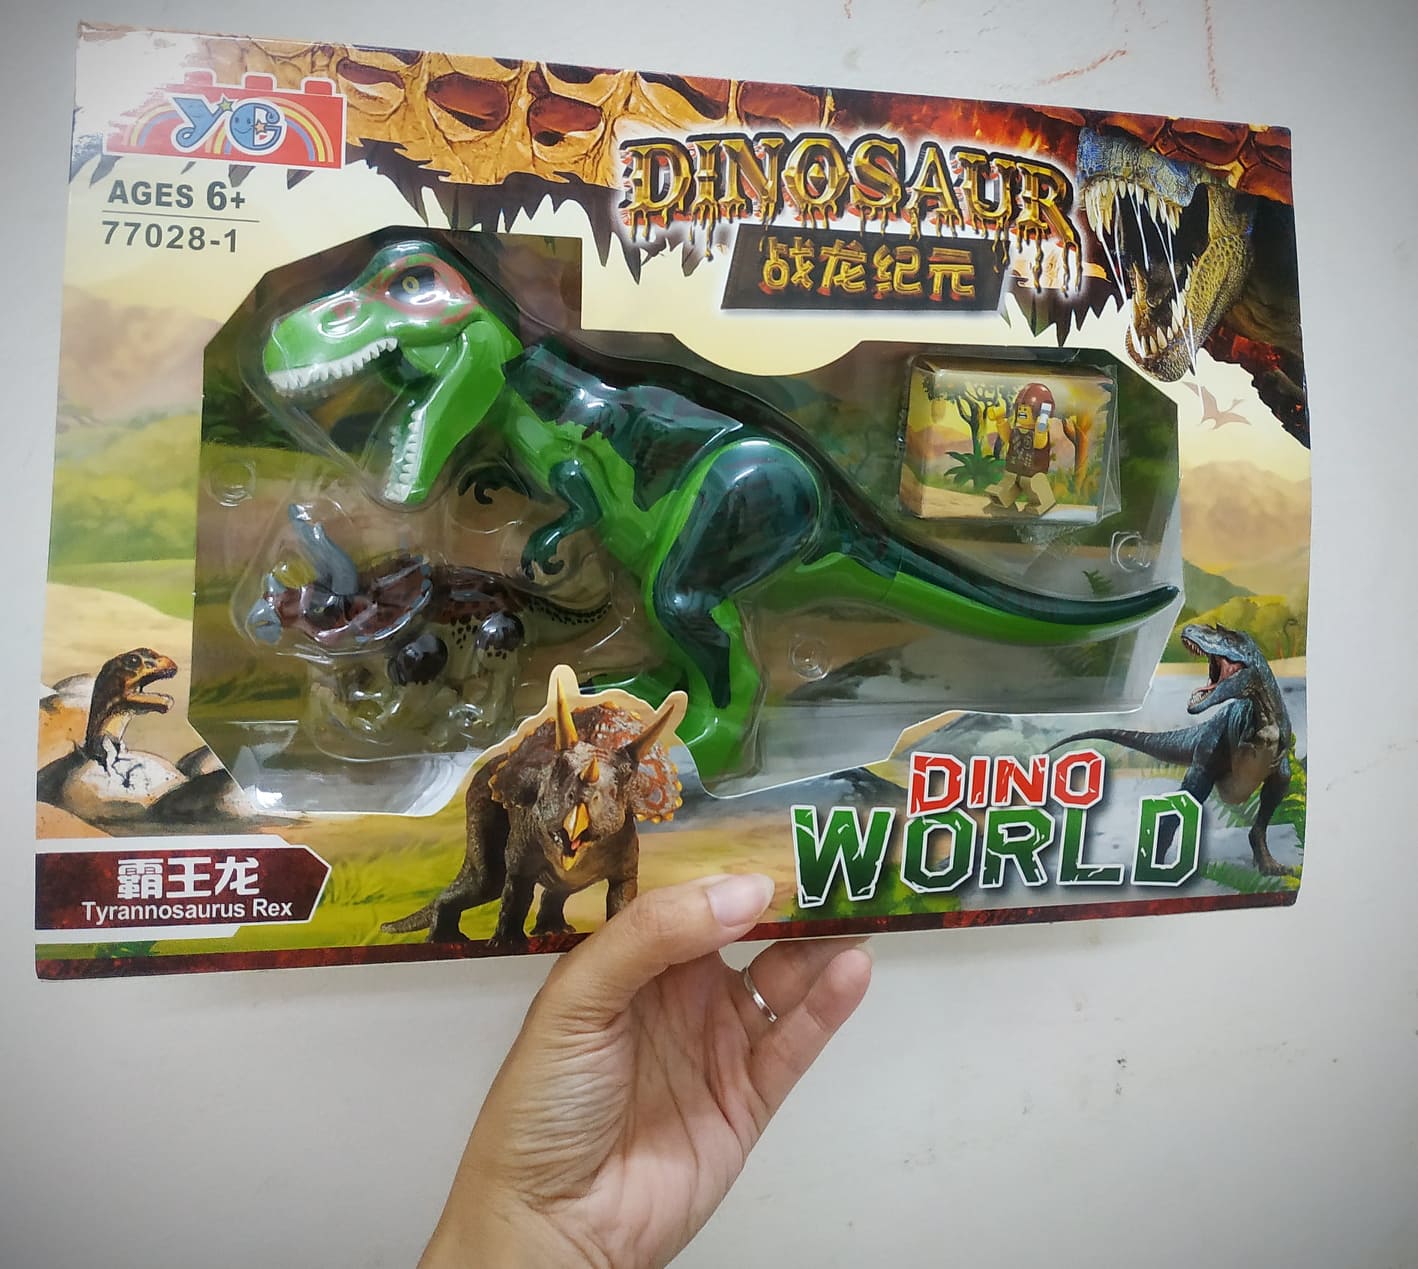 Bộ đồ chơi lắp ráp khủng long Dinosaur và minifigure (giao ngẫu nhiên)